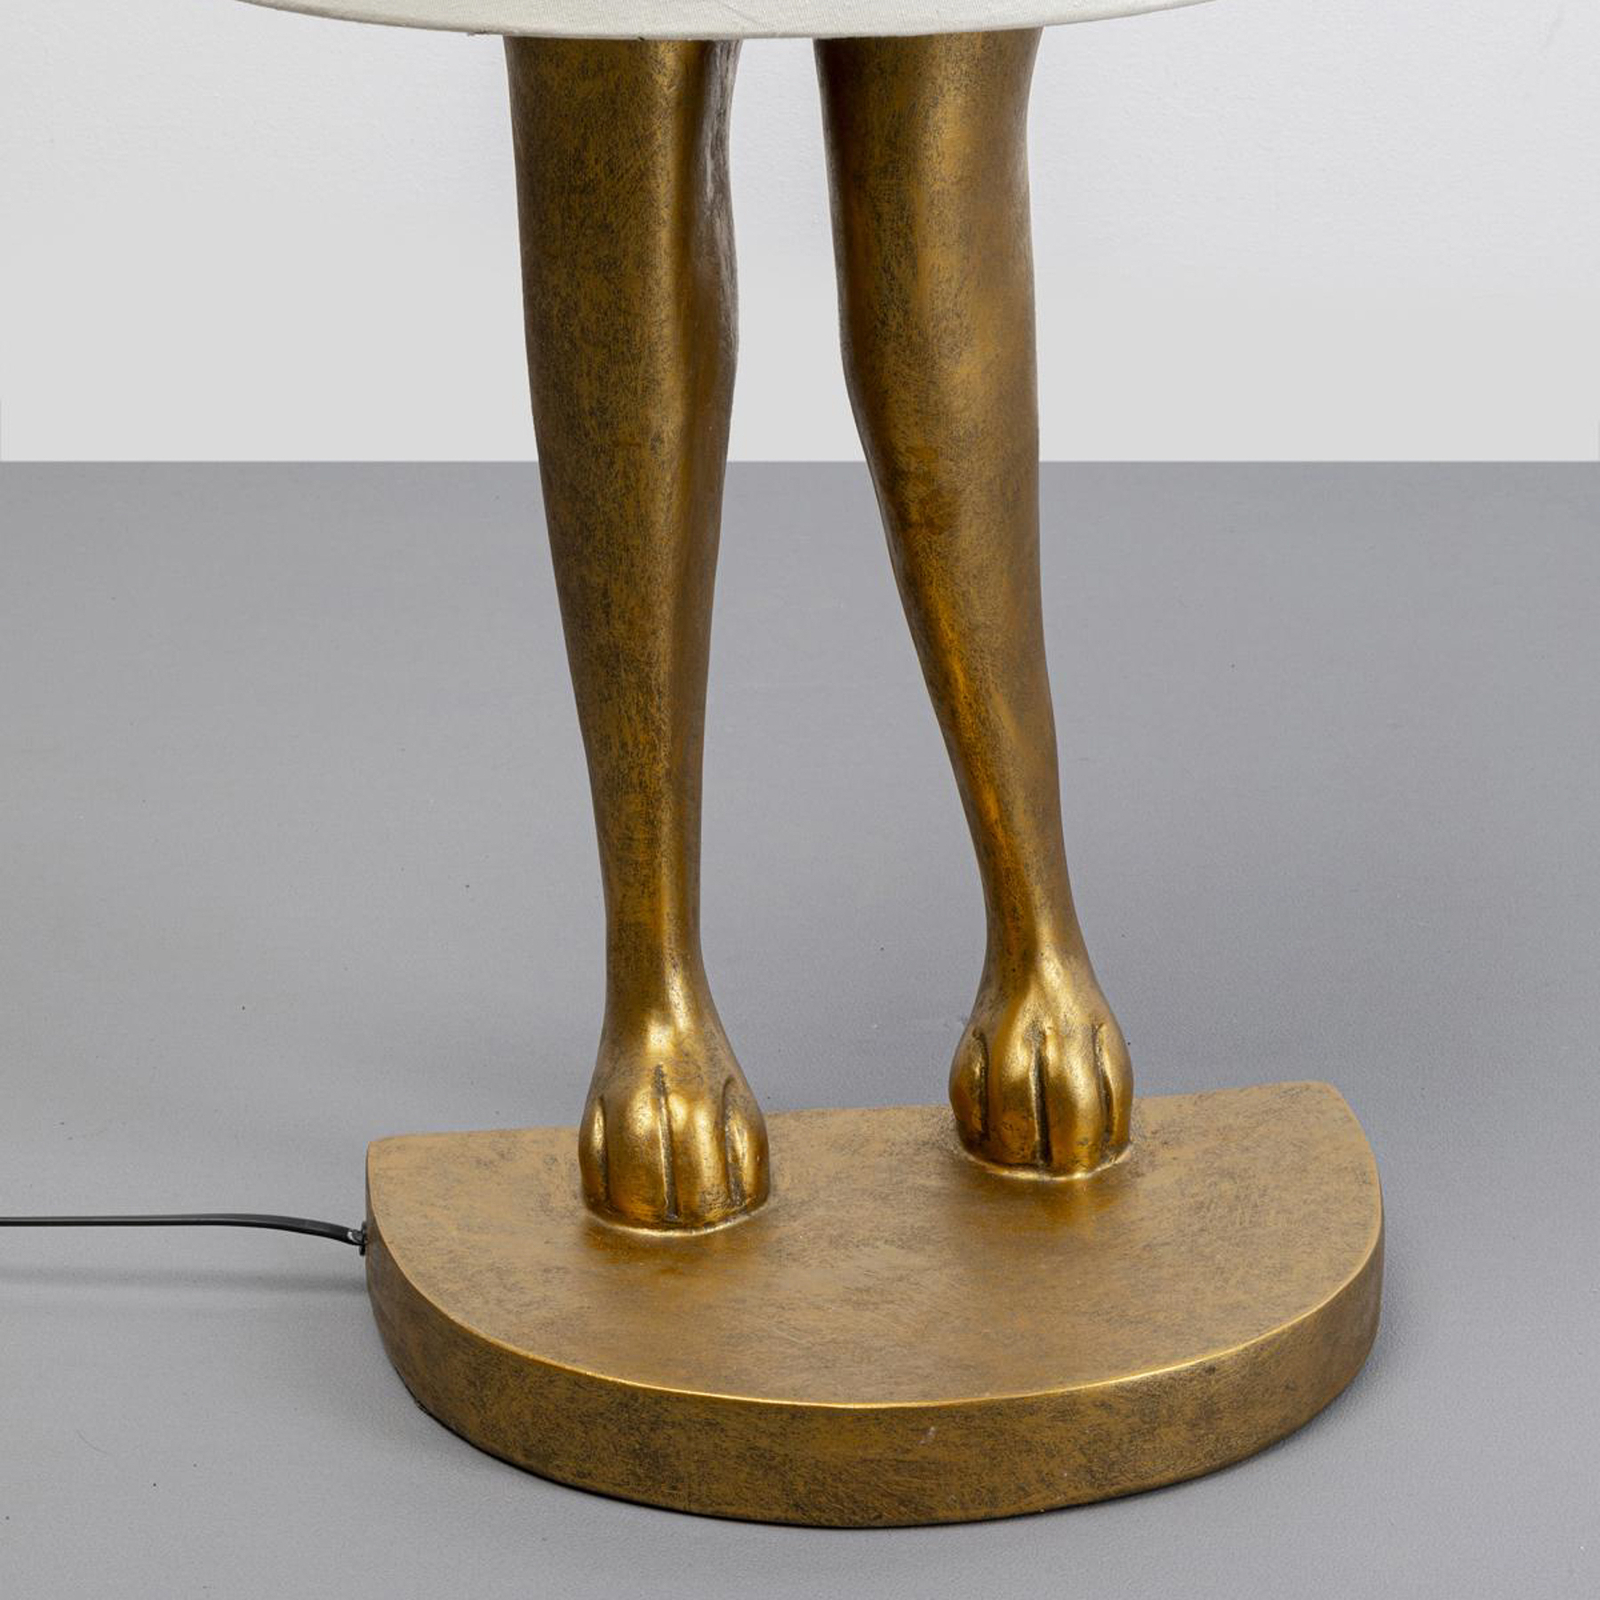 KARE Animal Rabbit floor lamp, gold, white linen fabric, 150 cm